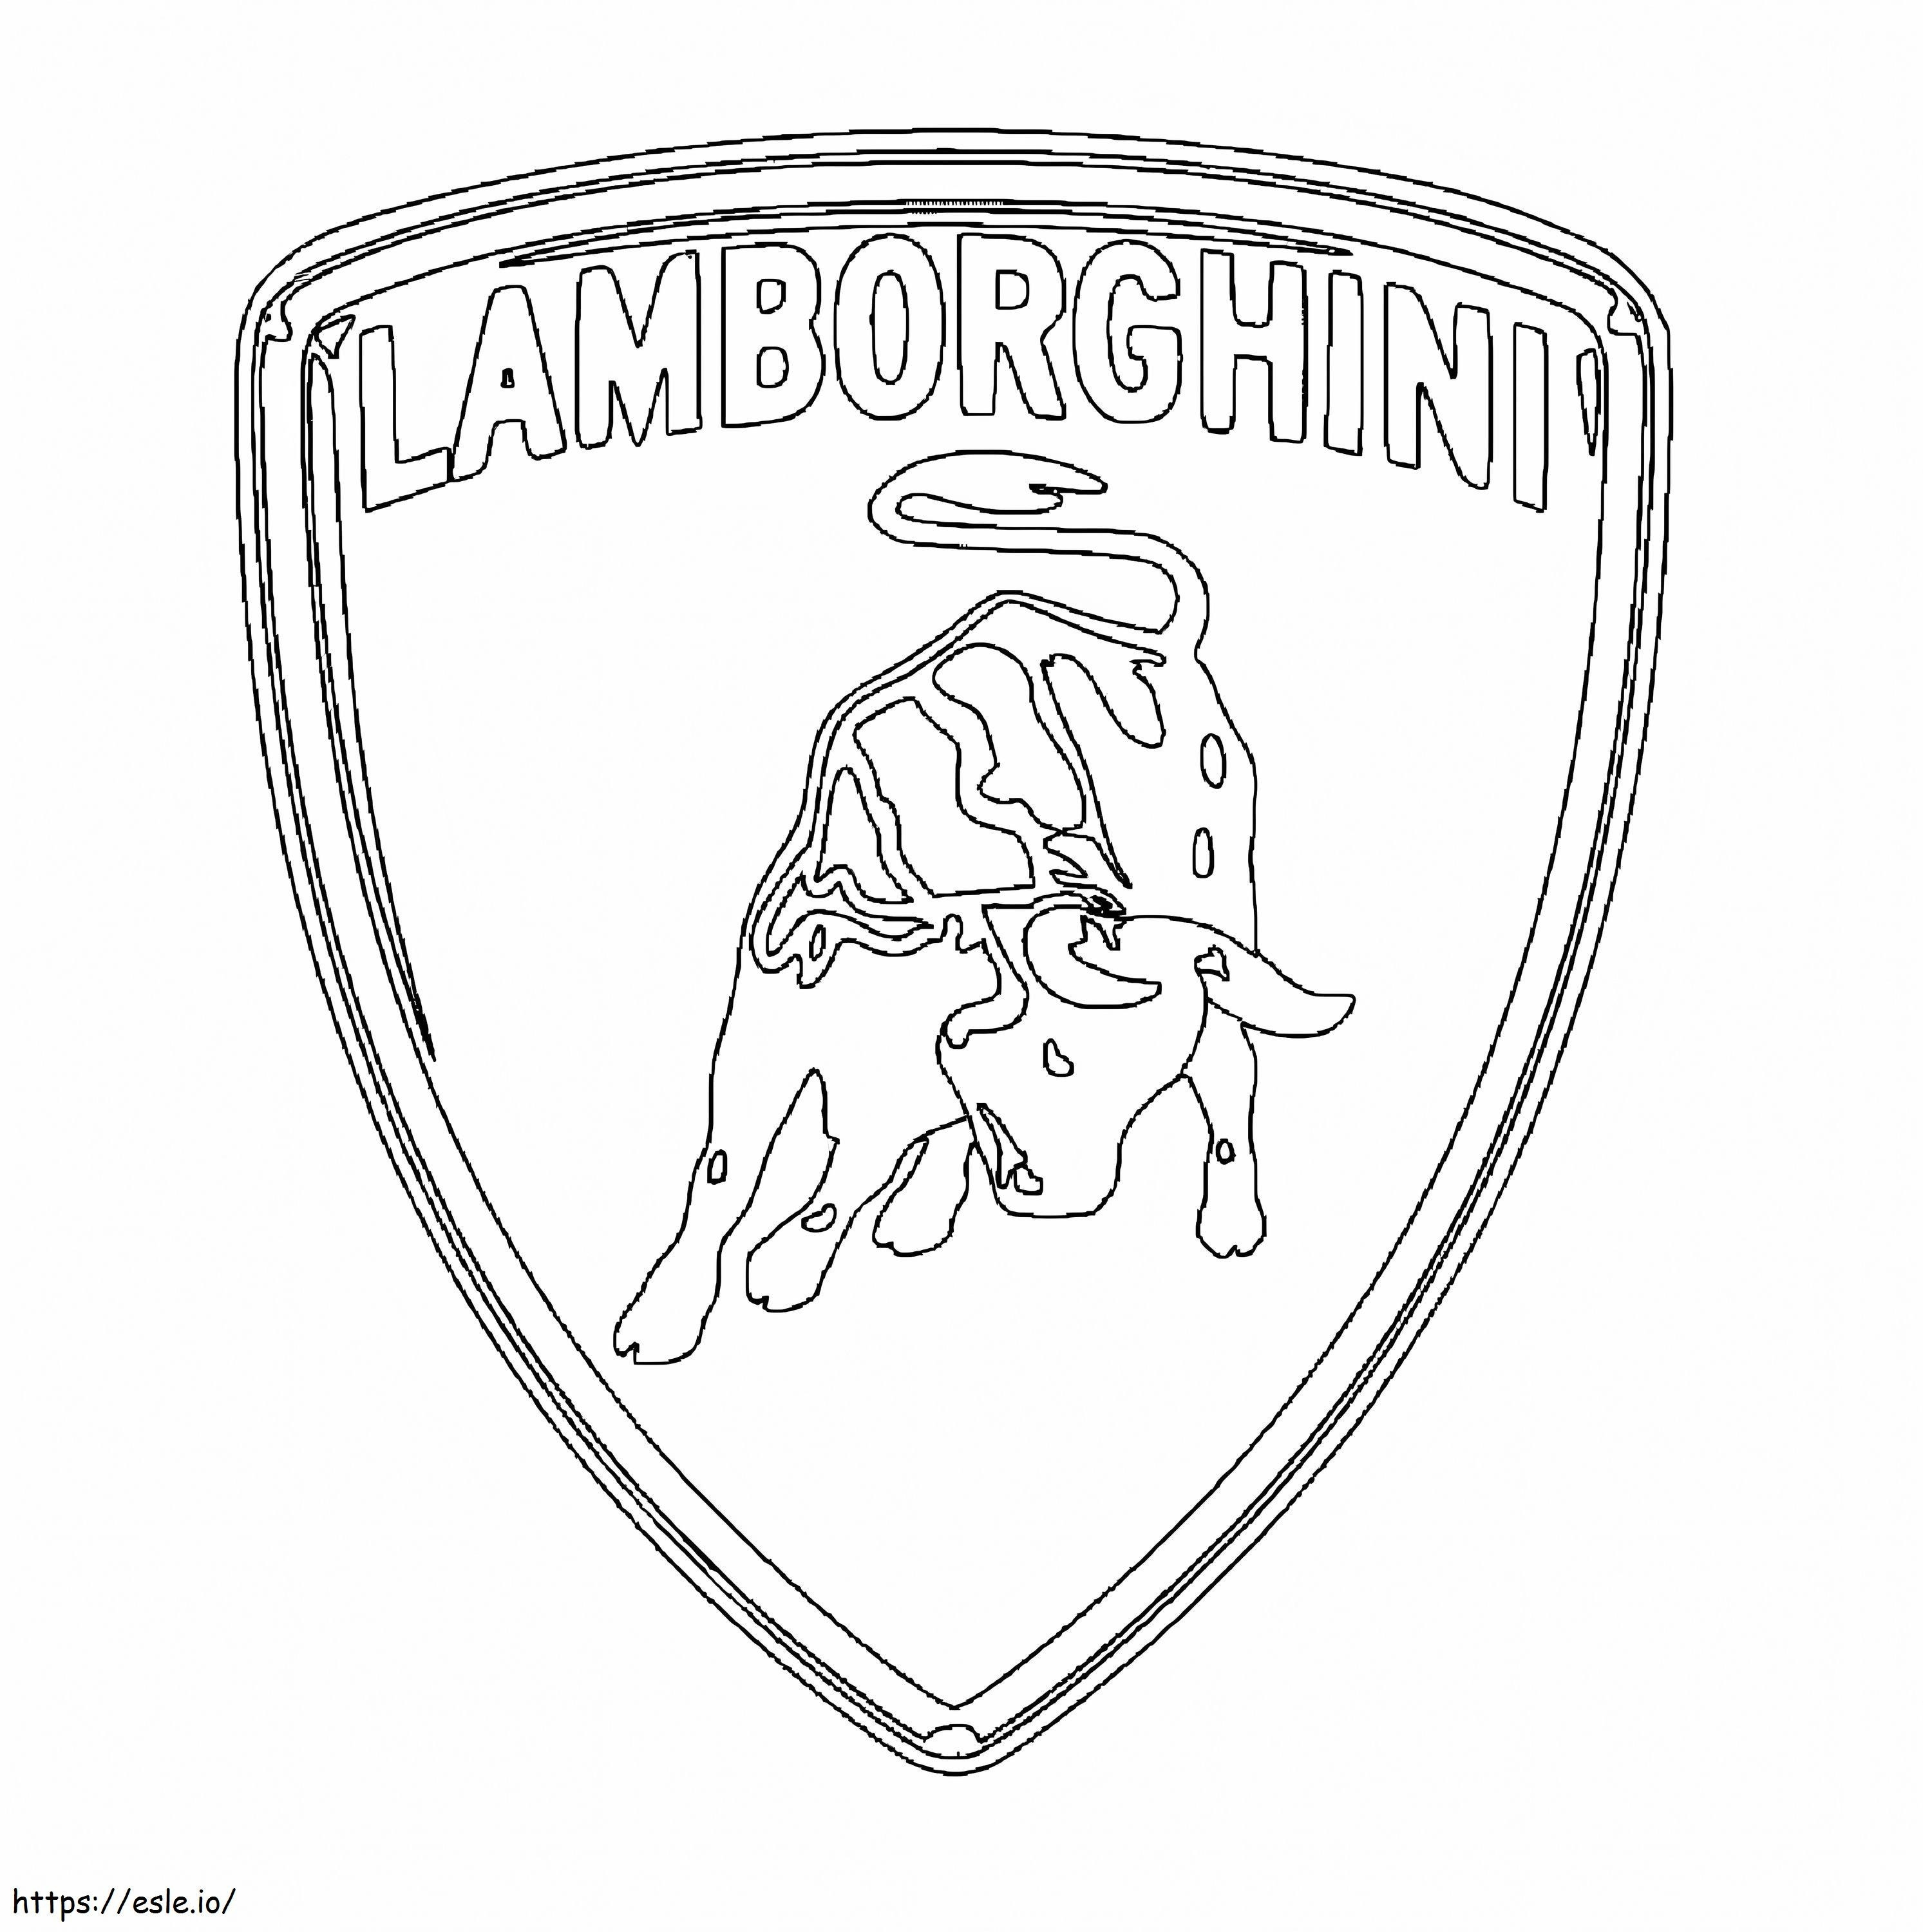 Lamborghini-logo kleurplaat kleurplaat